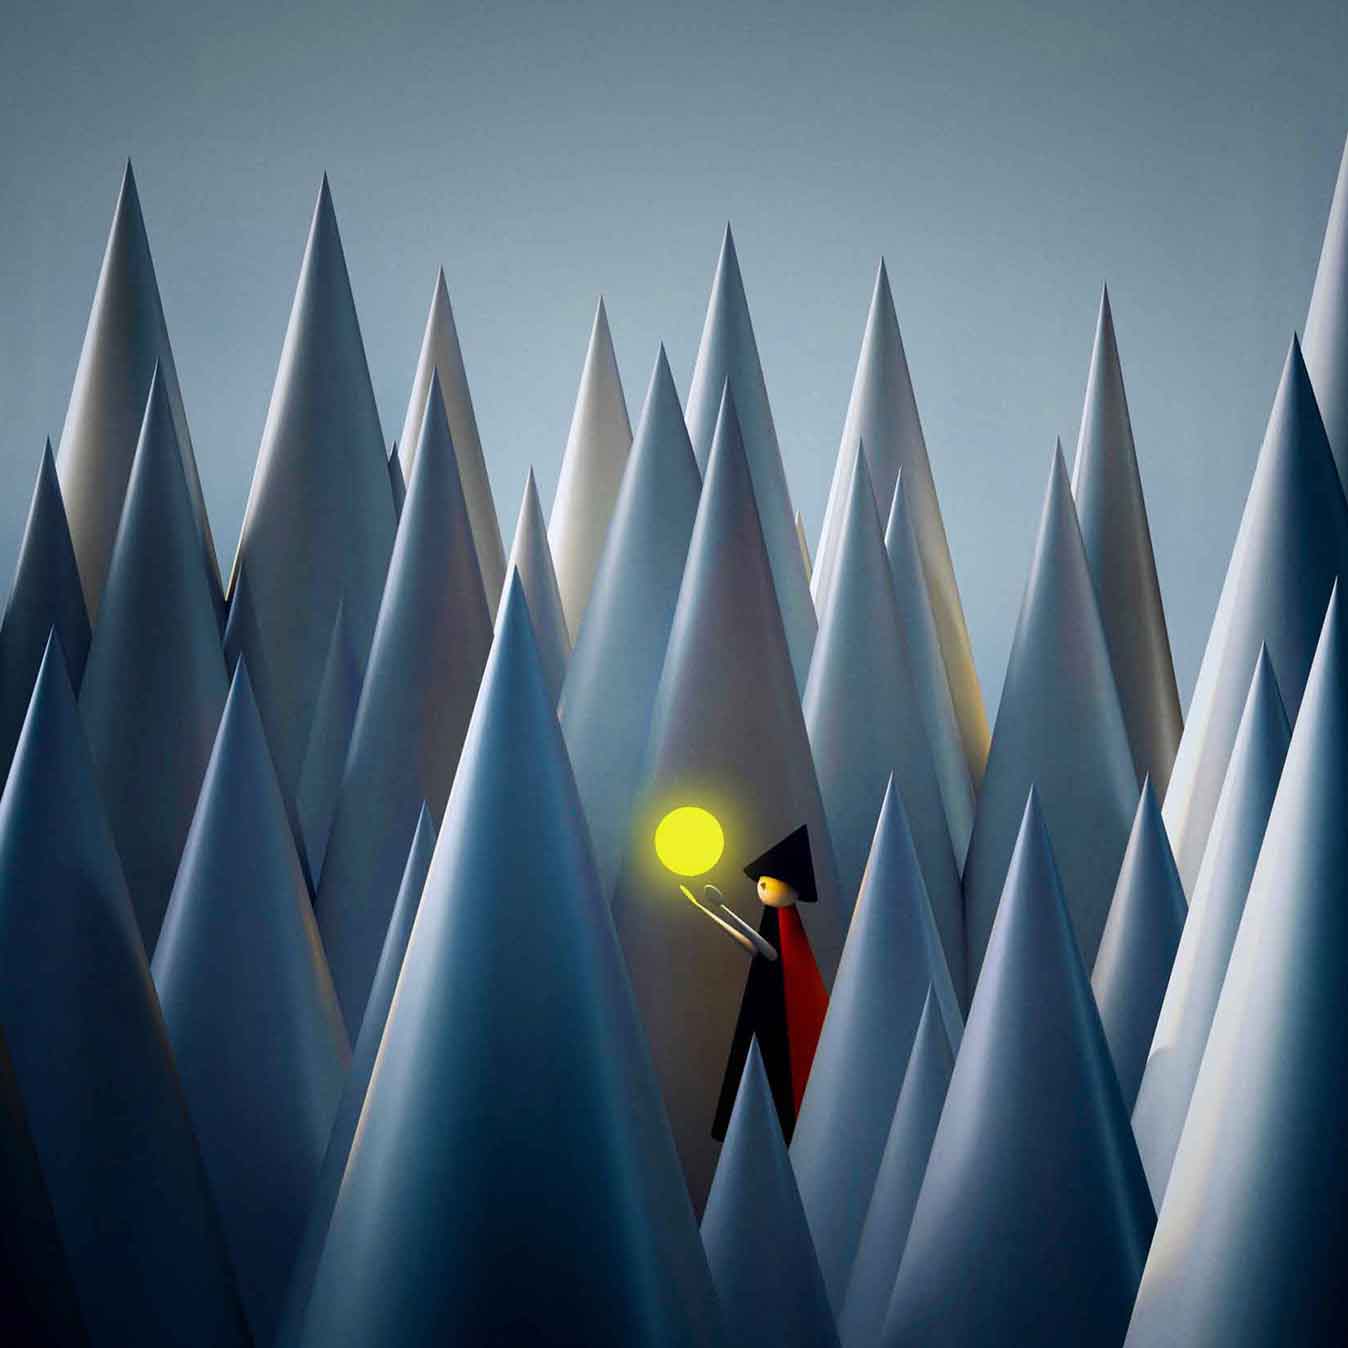 Atsushigraphのデジタルアート作品群「Living Things」シリーズのメインビジュアル画像です。